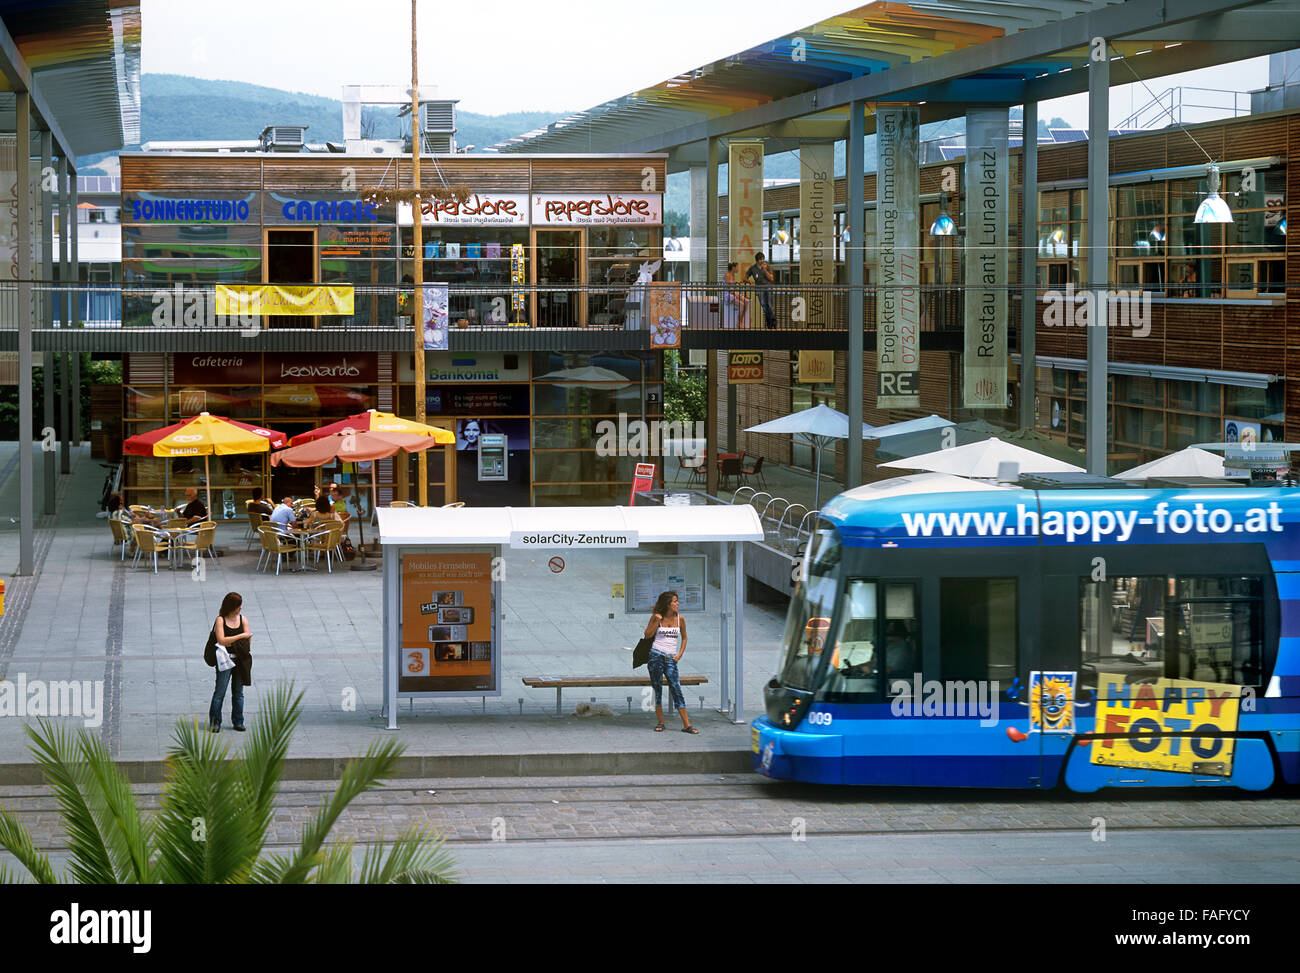 Eine Straßenbahn, die Ankunft in der zentralen Platz von Pichling Solar Stadt, eine neue nachhaltige Vorort von Linz, Österreich. Stockfoto